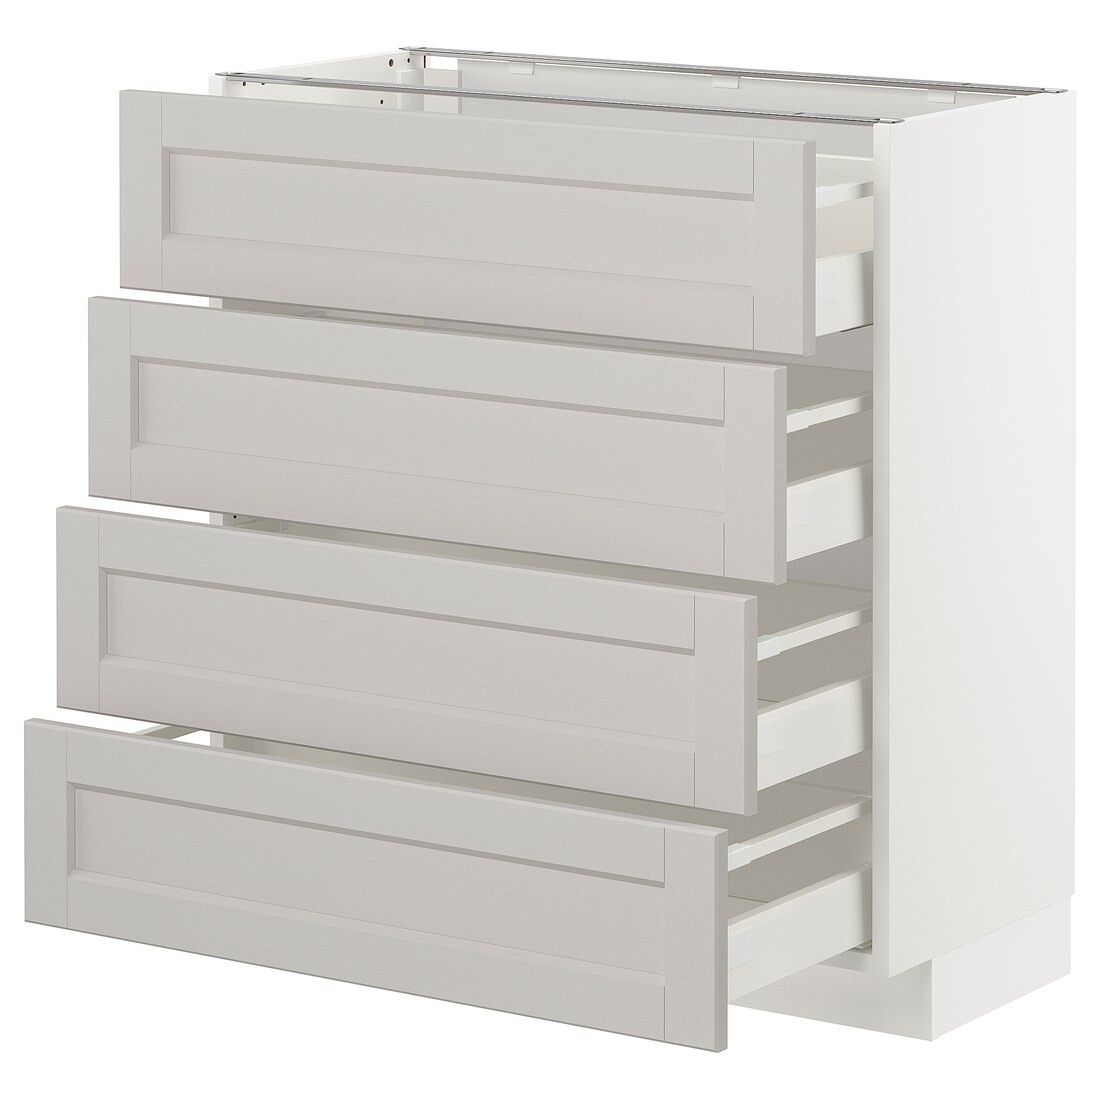 IKEA METOD МЕТОД / MAXIMERA МАКСИМЕРА Напольный шкаф с ящиками, белый / Lerhyttan светло-серый, 80x37 см 99274393 992.743.93